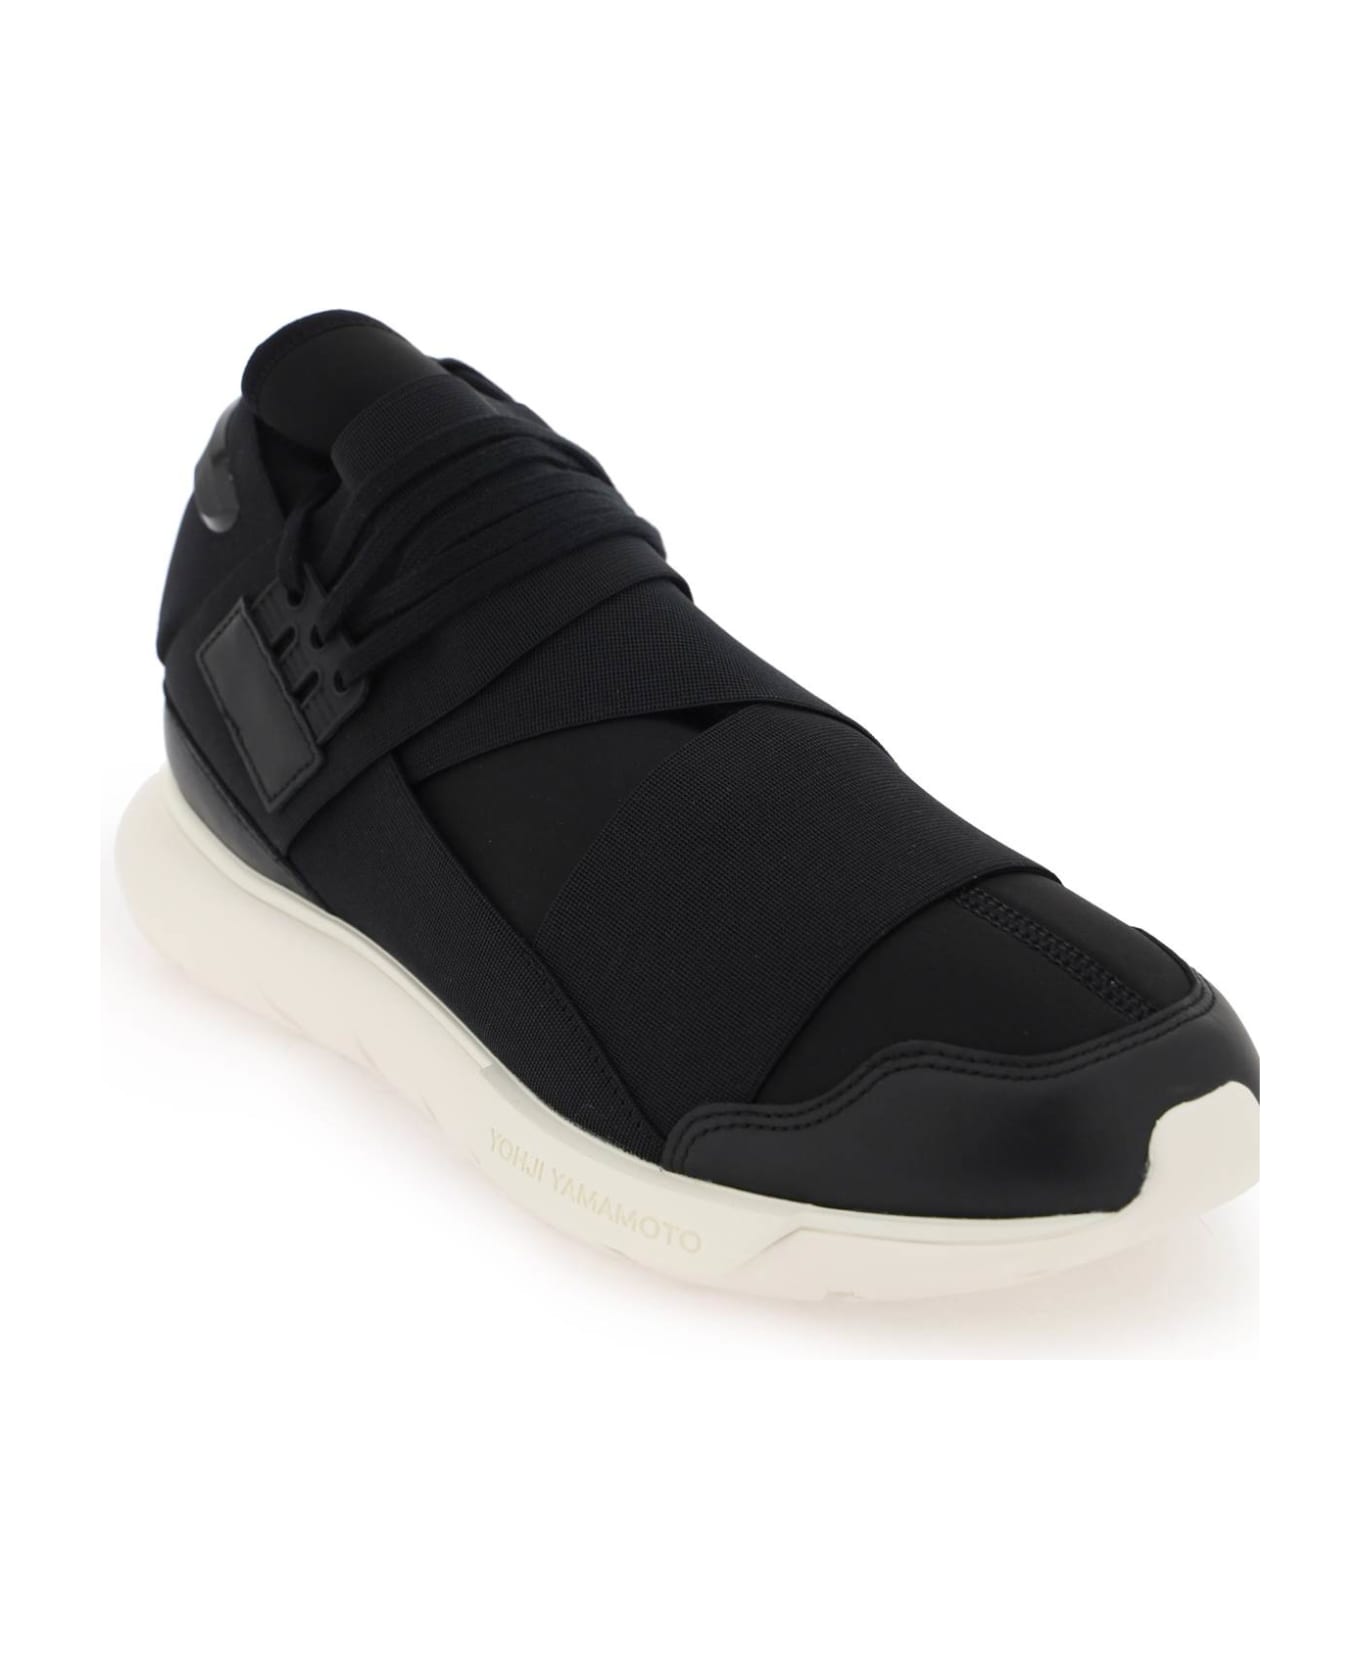 Y-3 Black And Off White Qasa Sneakers - BLACKBLACKOWHITE